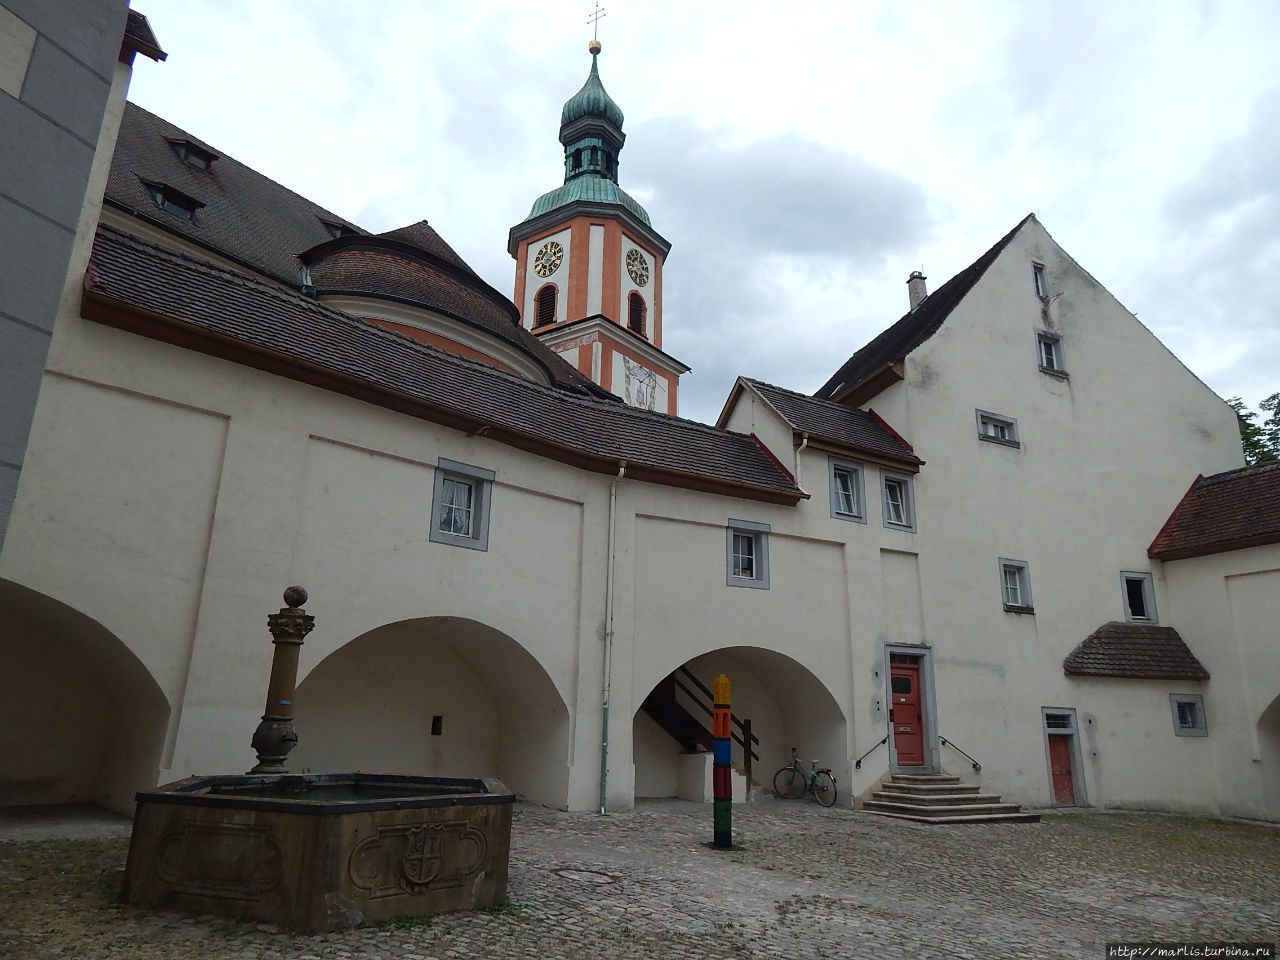 Тингенский замок, где сейчас находится налоговая Вальдсхут-Тинген, Германия